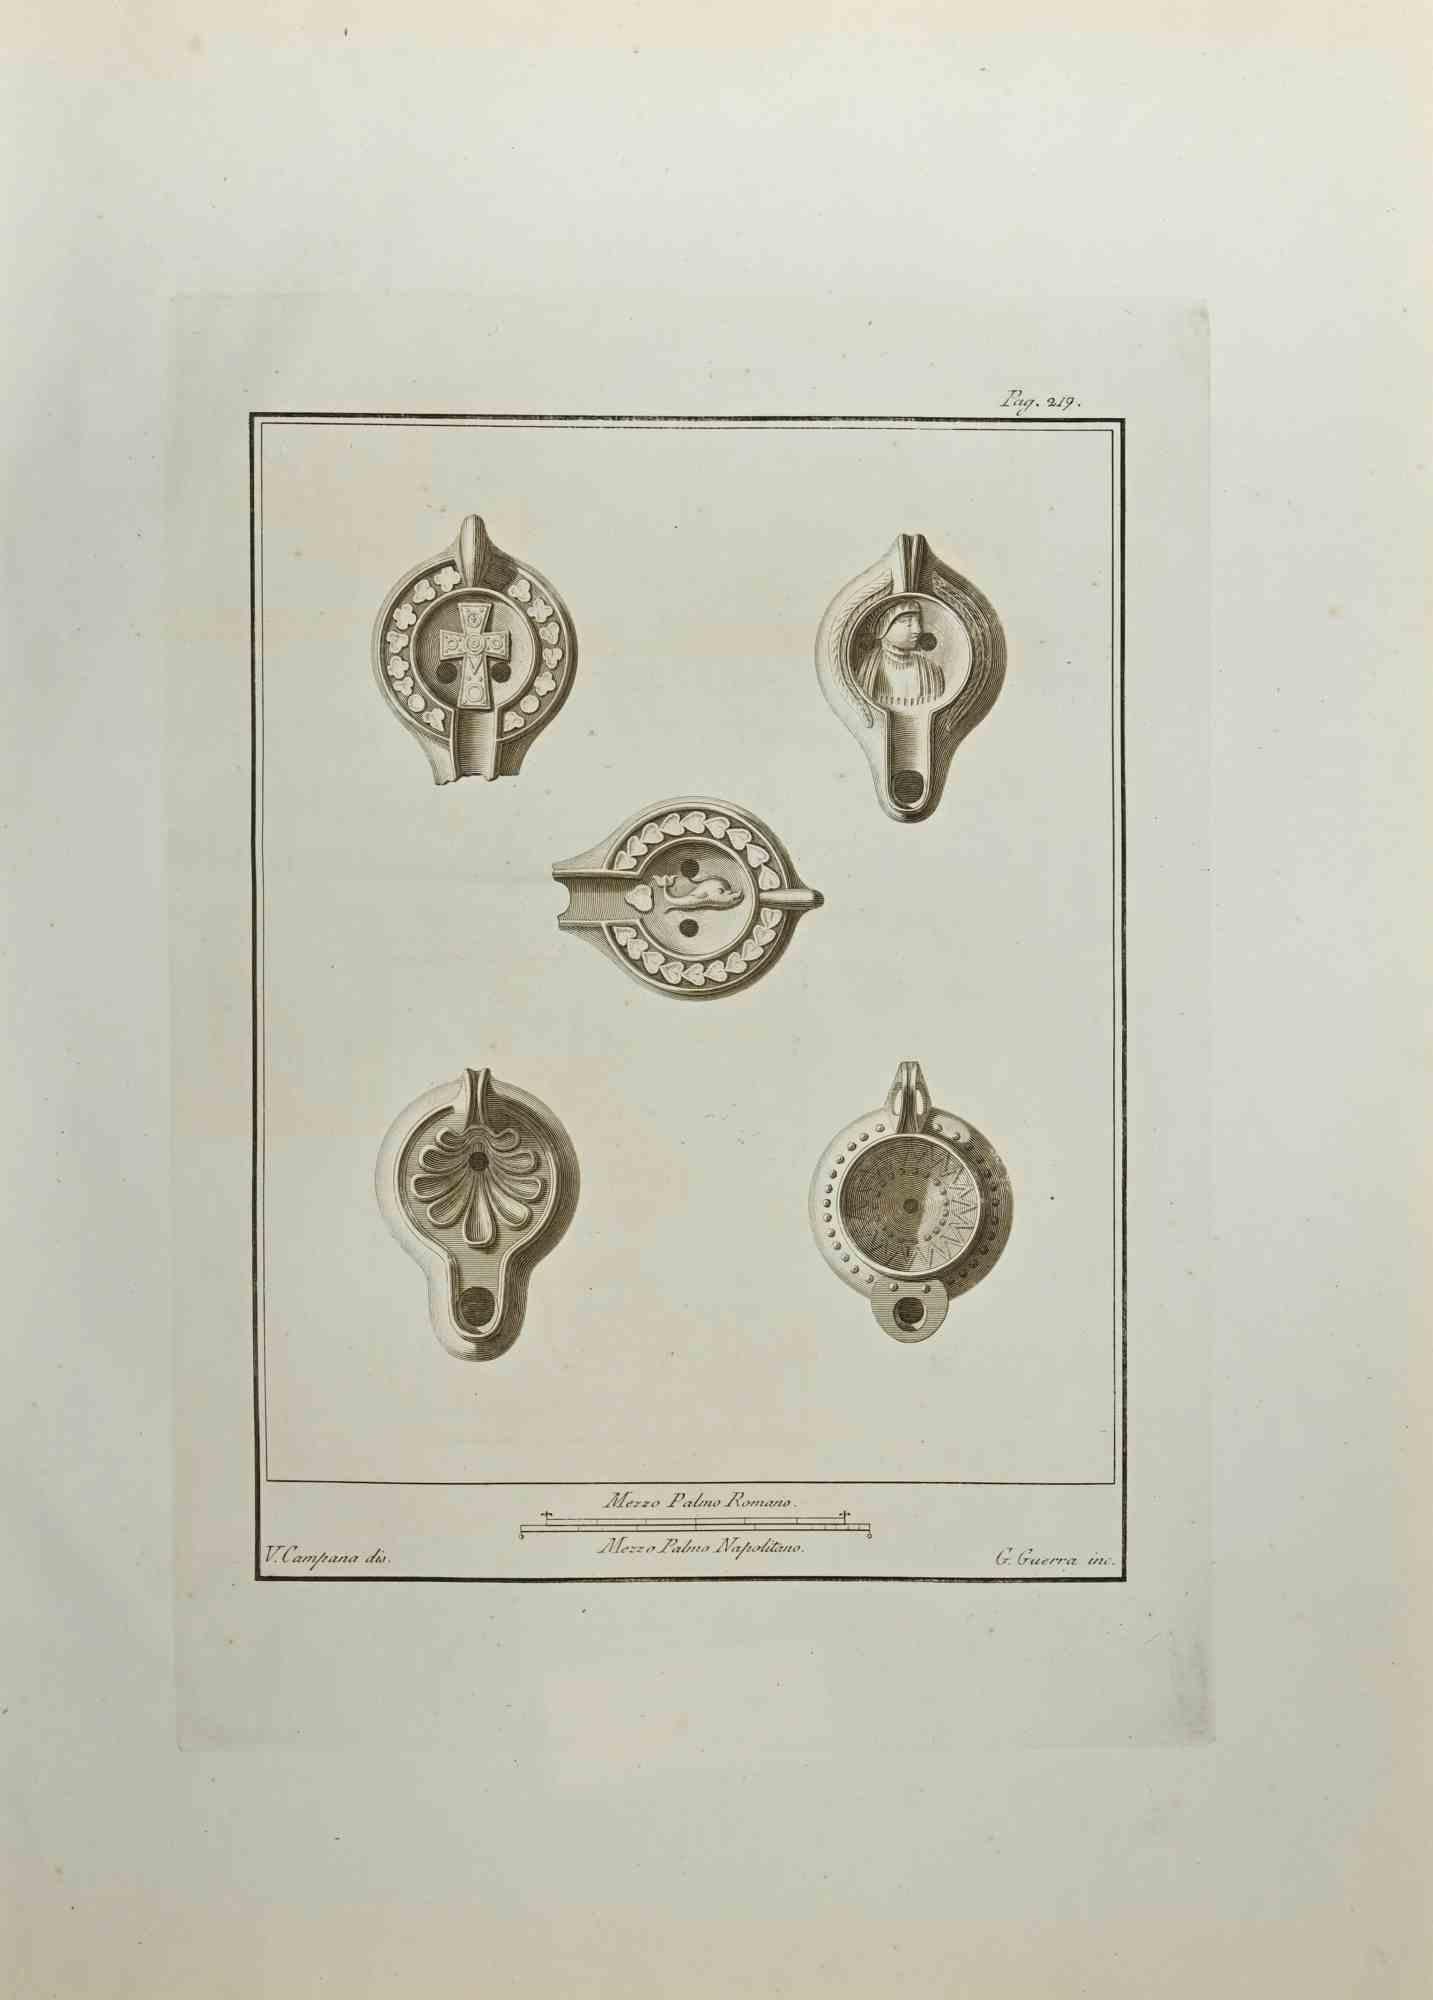 Das Stillleben aus den "Altertümern von Herculaneum" ist eine Radierung auf Papier von Giovanni Guerra aus dem 18. Jahrhundert.

Signiert auf der Platte.

Guter Zustand und gealtert mit einigen Faltungen.

Die Radierung gehört zu der Druckserie